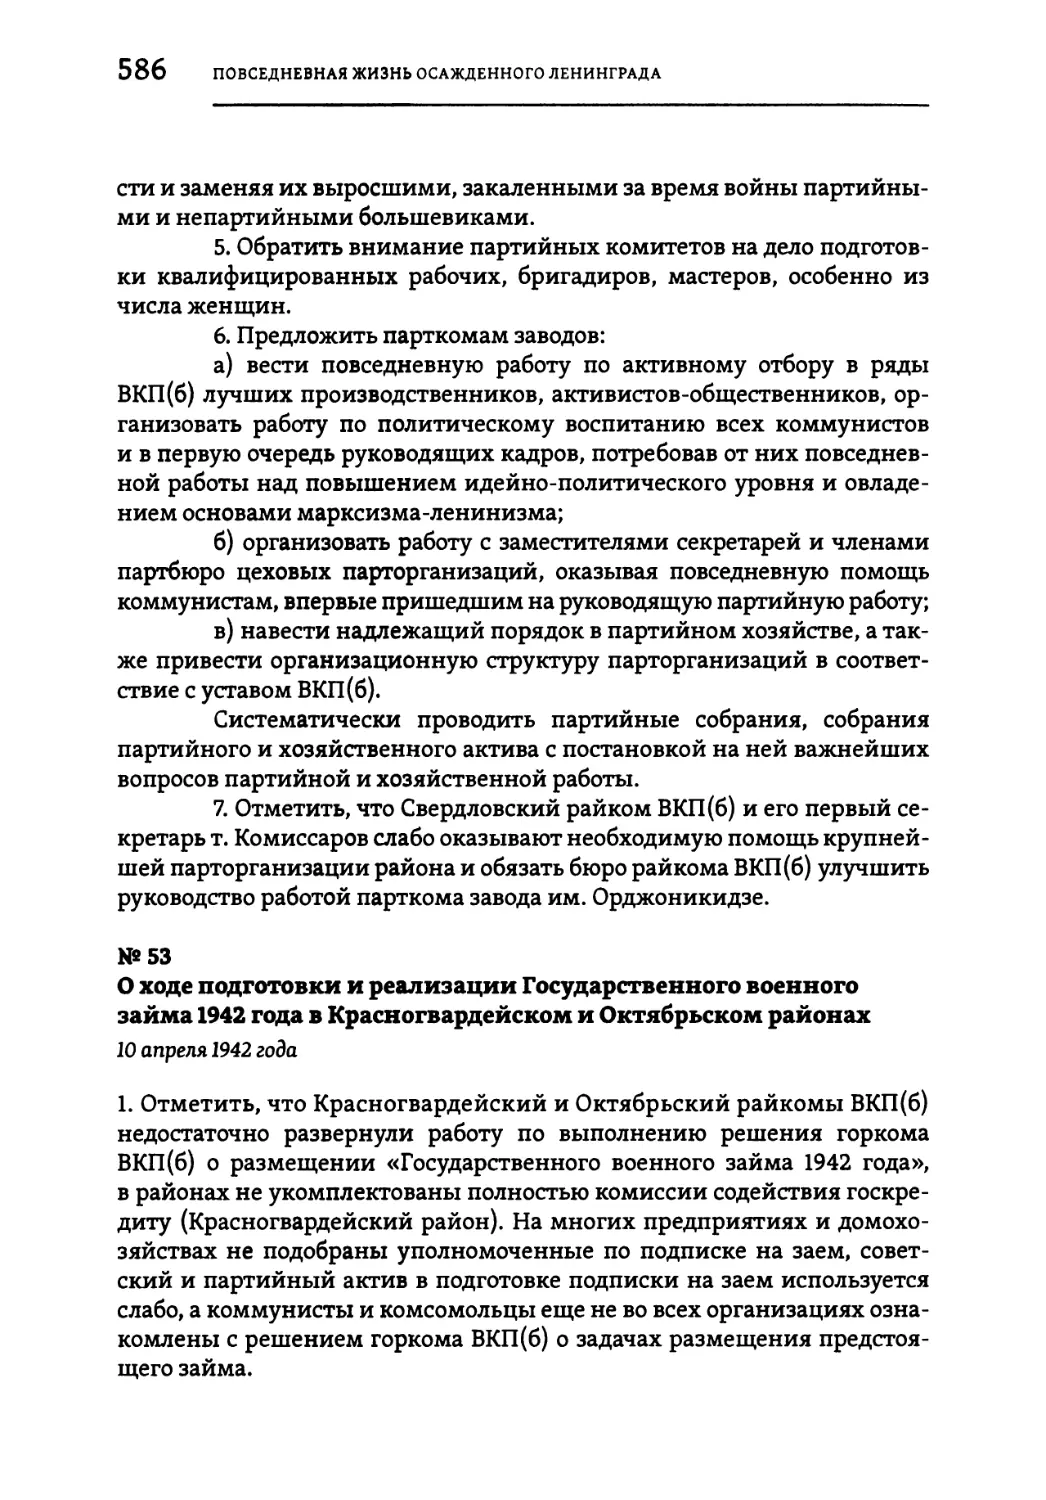 №53 О ходе подготовки и реализации Государственного военного займа 1942 года в Красногвардейском и Октябрьском районах